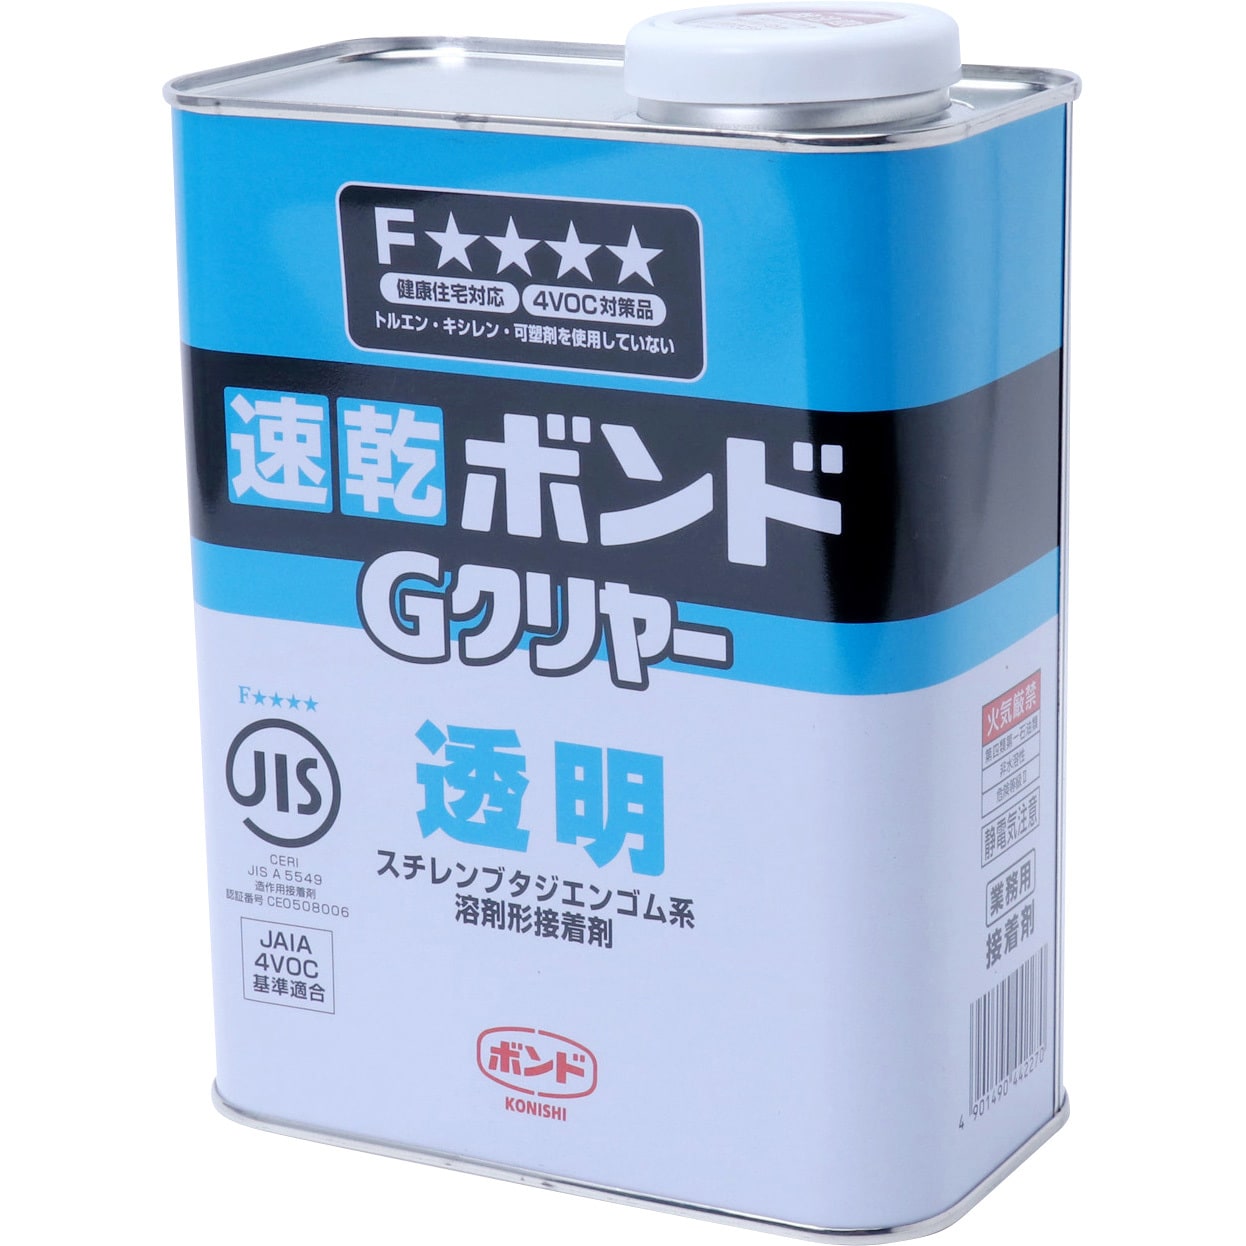 コニシ K10 1kg ケース6缶入り - 2